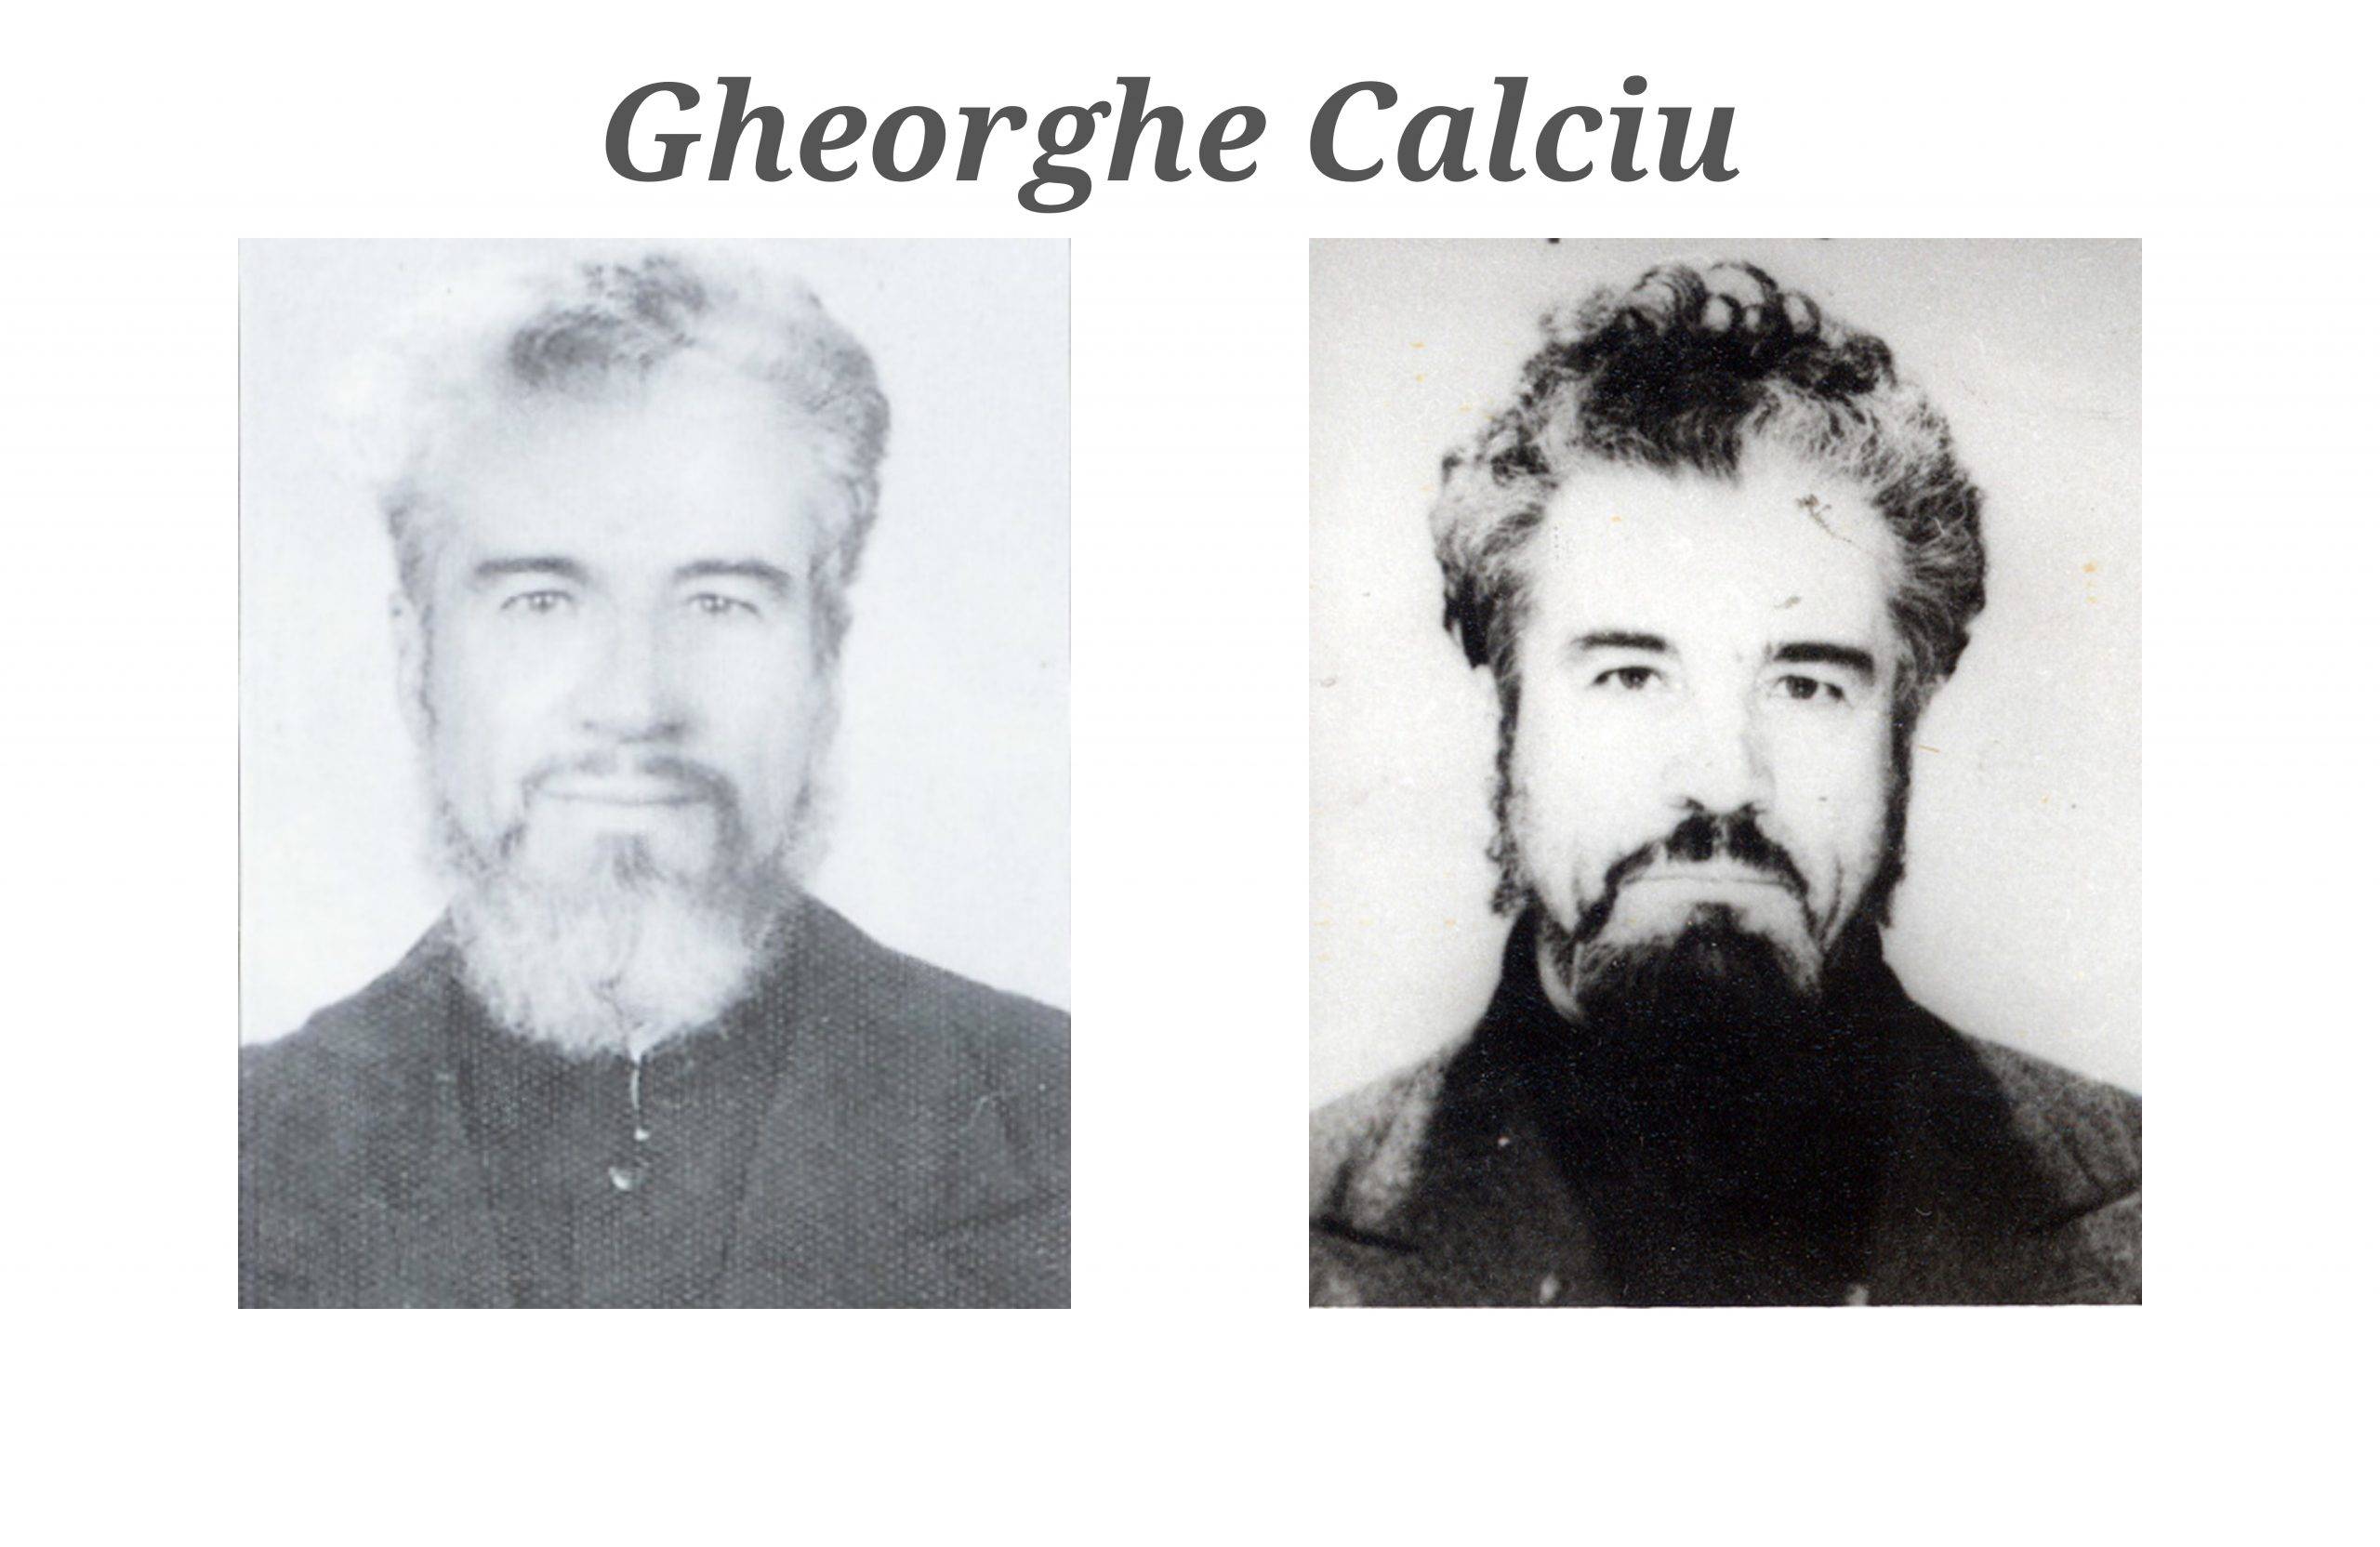 Gheorghe Calciu